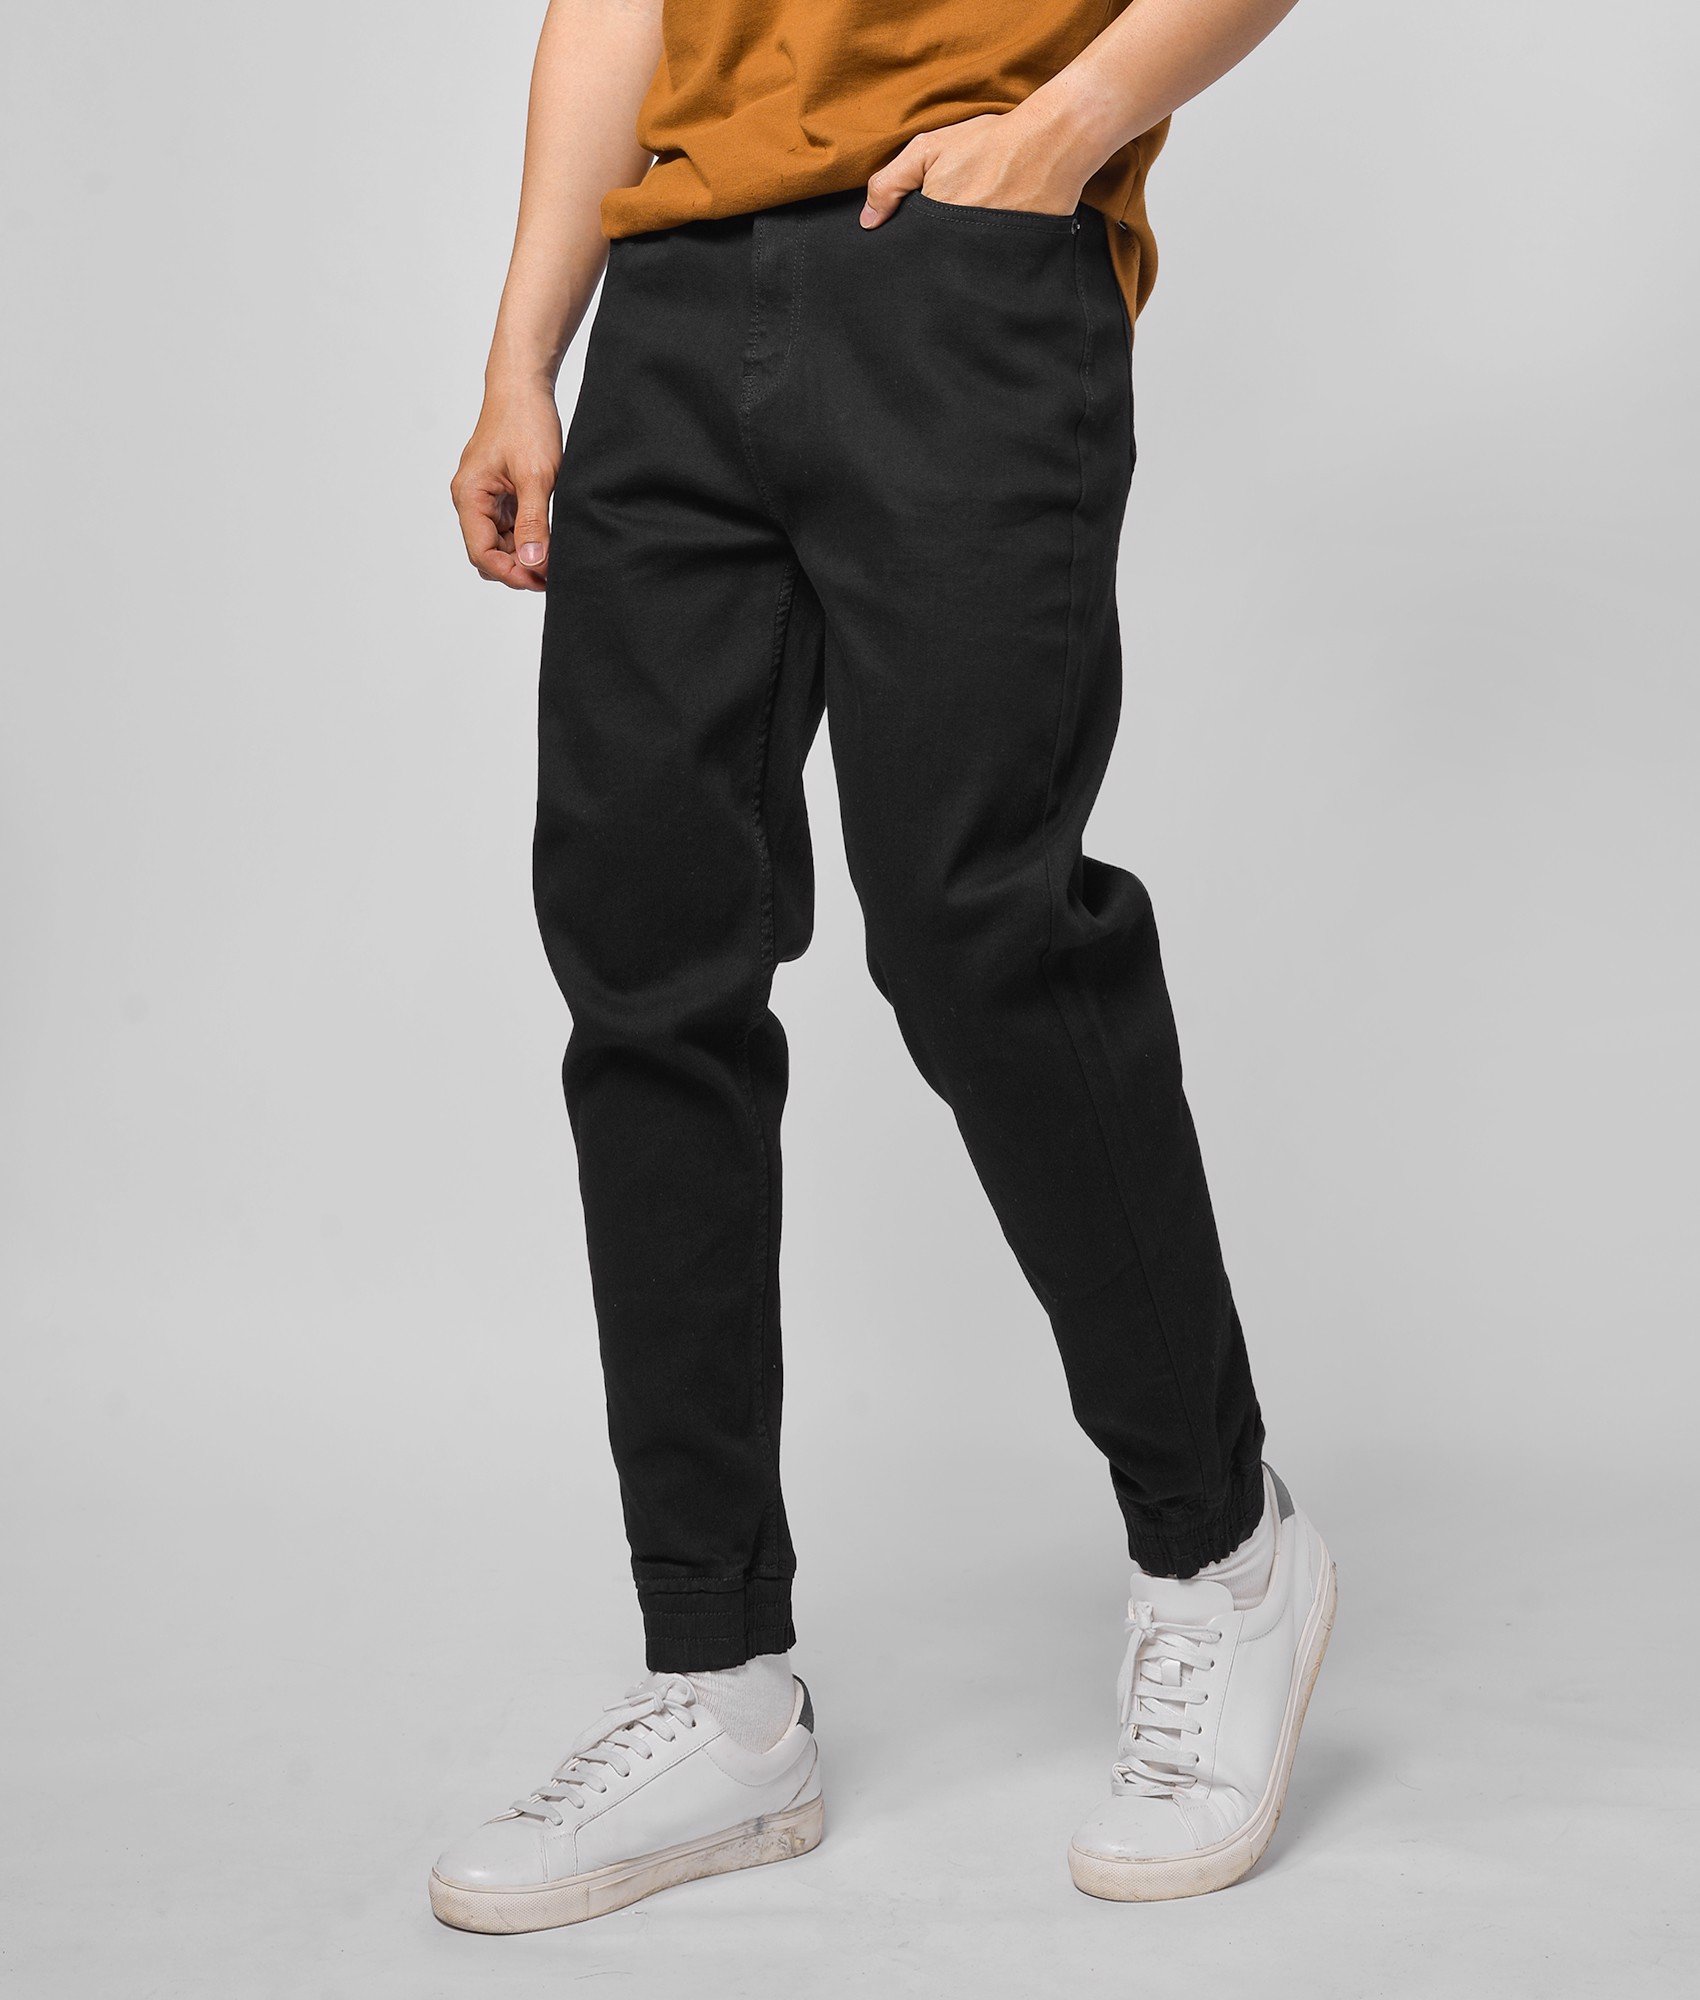 Quần jogger jeans màu đen DPA015 - Shop LASTORE